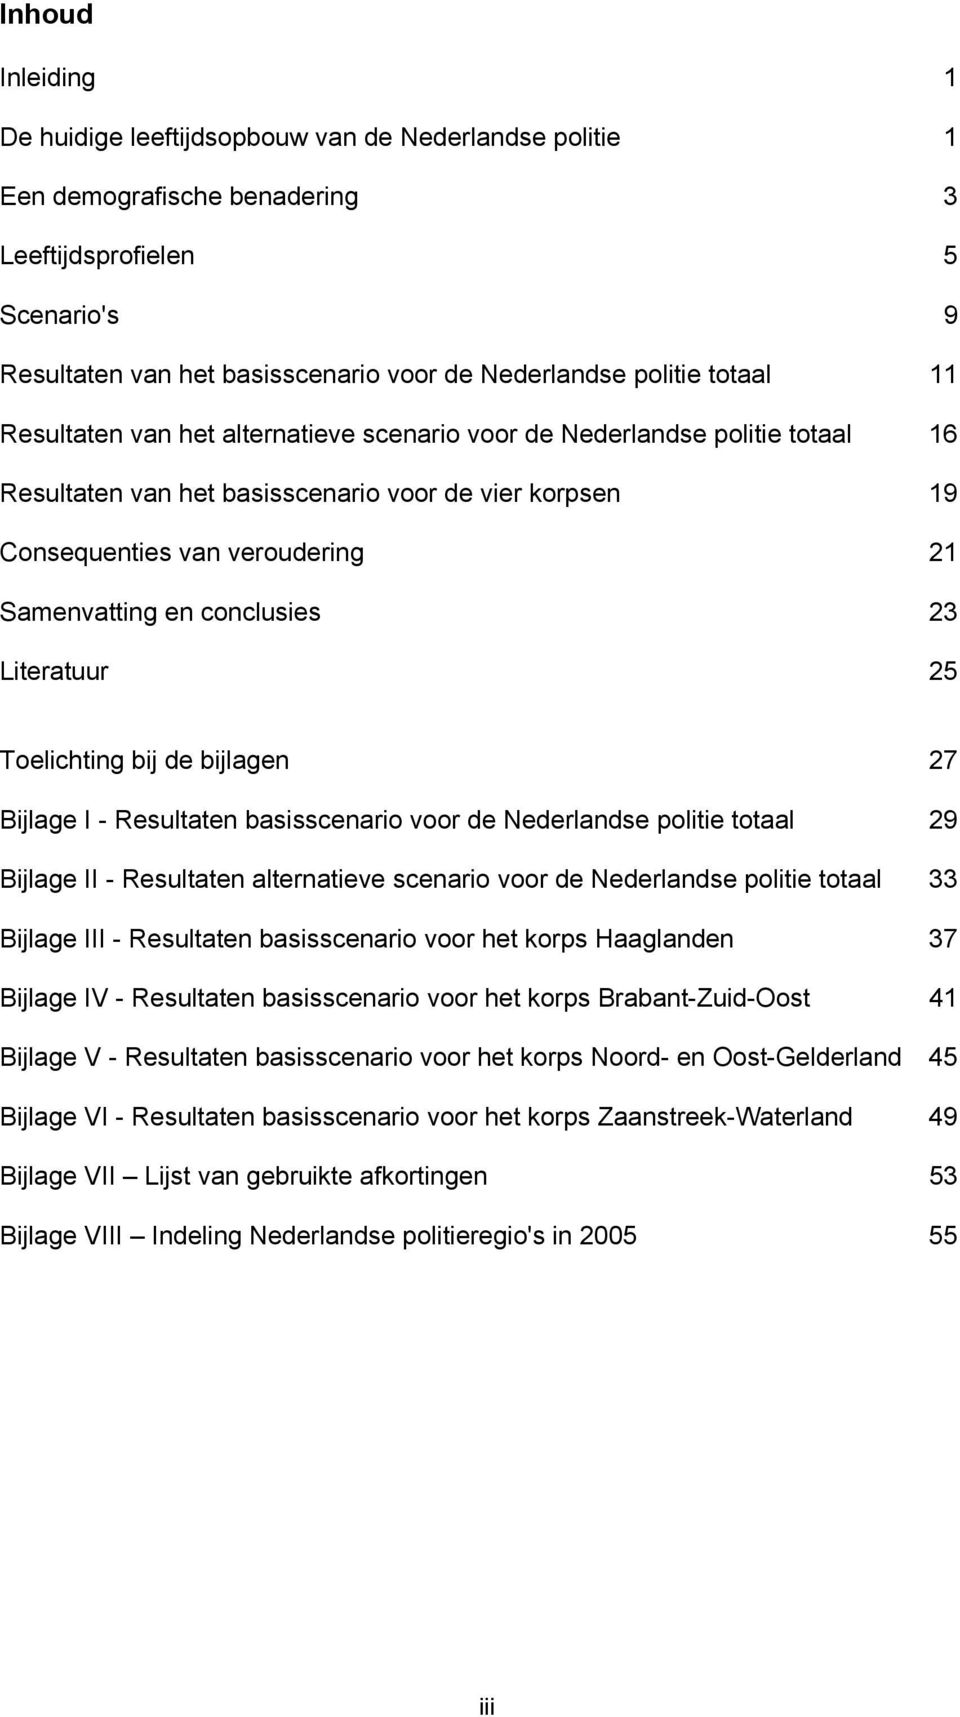 en conclusies 23 Literatuur Toelichting bij de bijlagen 27 Bijlage I - Resultaten basisscenario voor de Nederlandse politie totaal 29 Bijlage II - Resultaten alternatieve scenario voor de Nederlandse